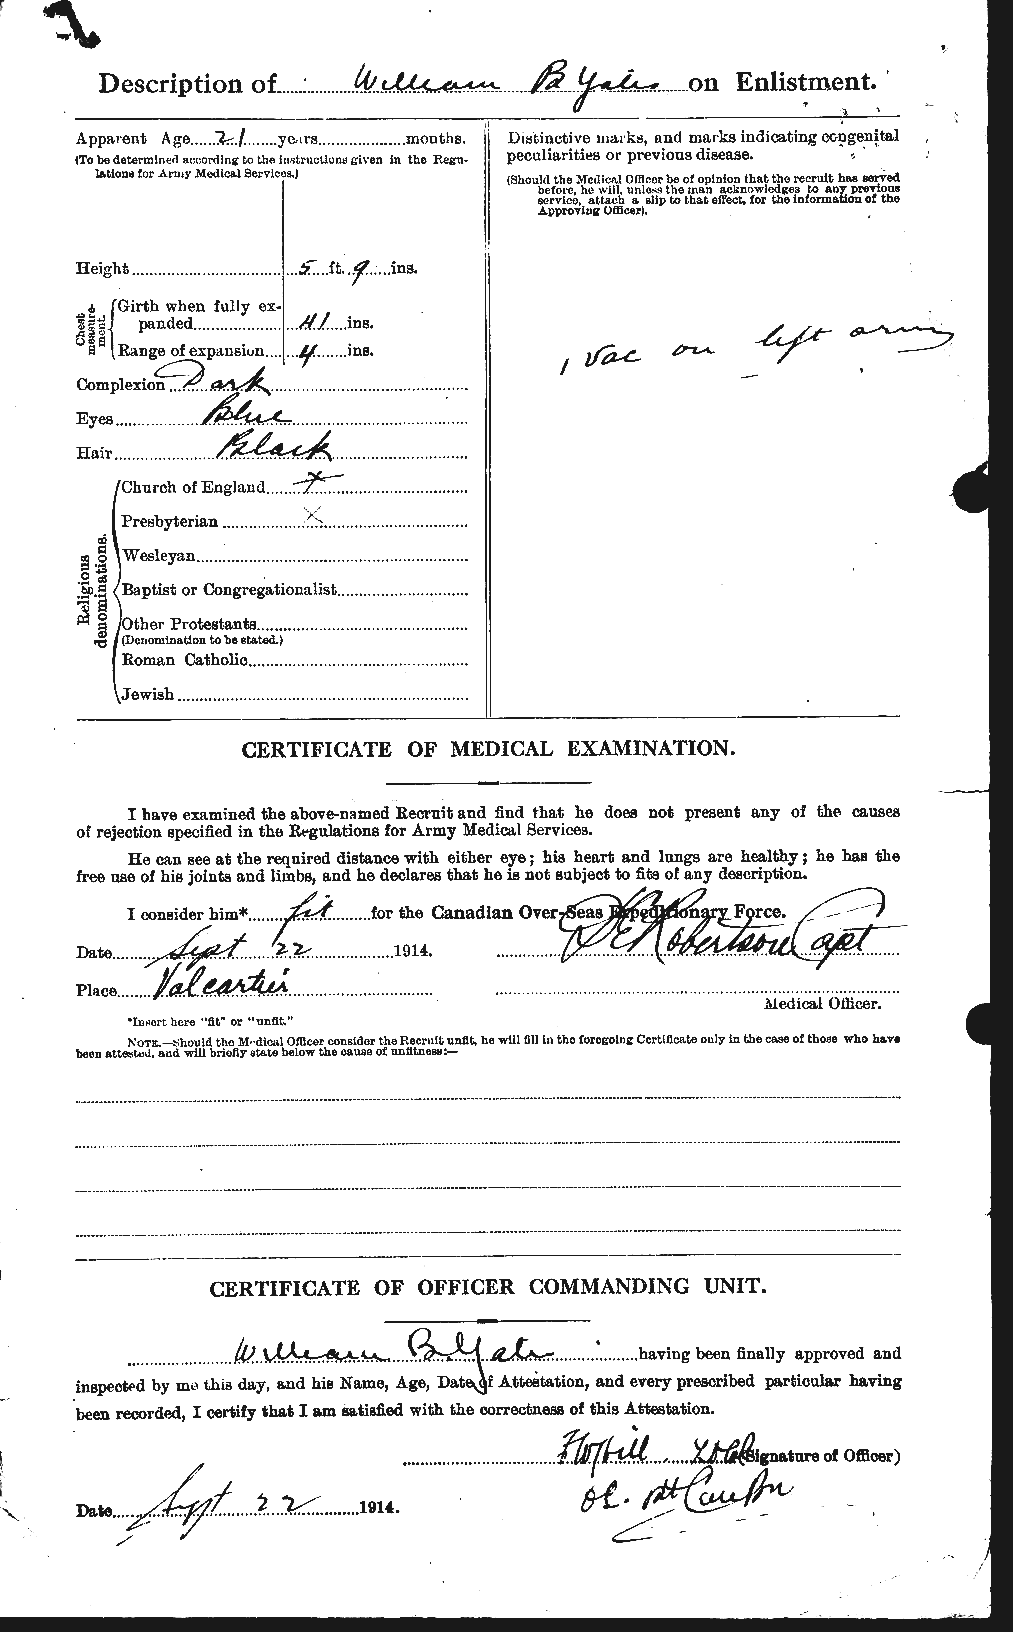 Dossiers du Personnel de la Première Guerre mondiale - CEC 691324b